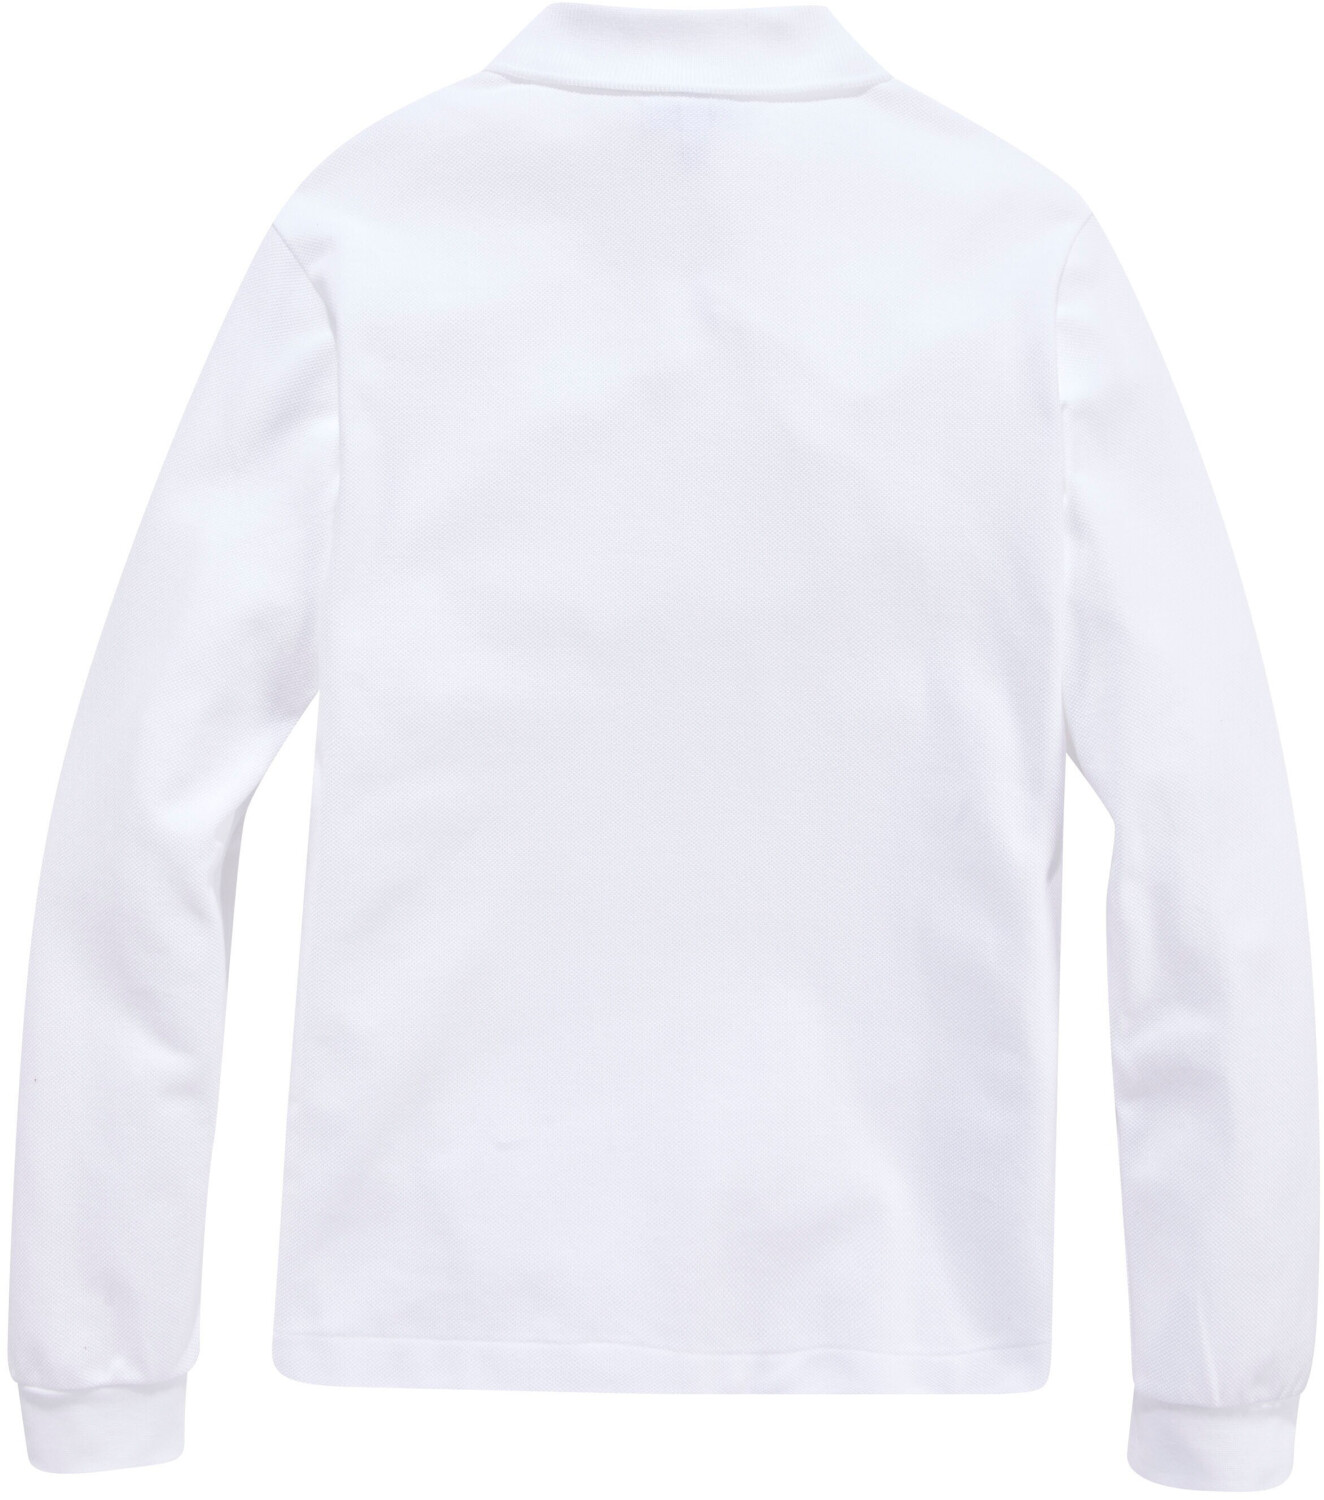 | 38,50 Poloshirt € (PJ8915-001) Preisvergleich bei ab white Lacoste